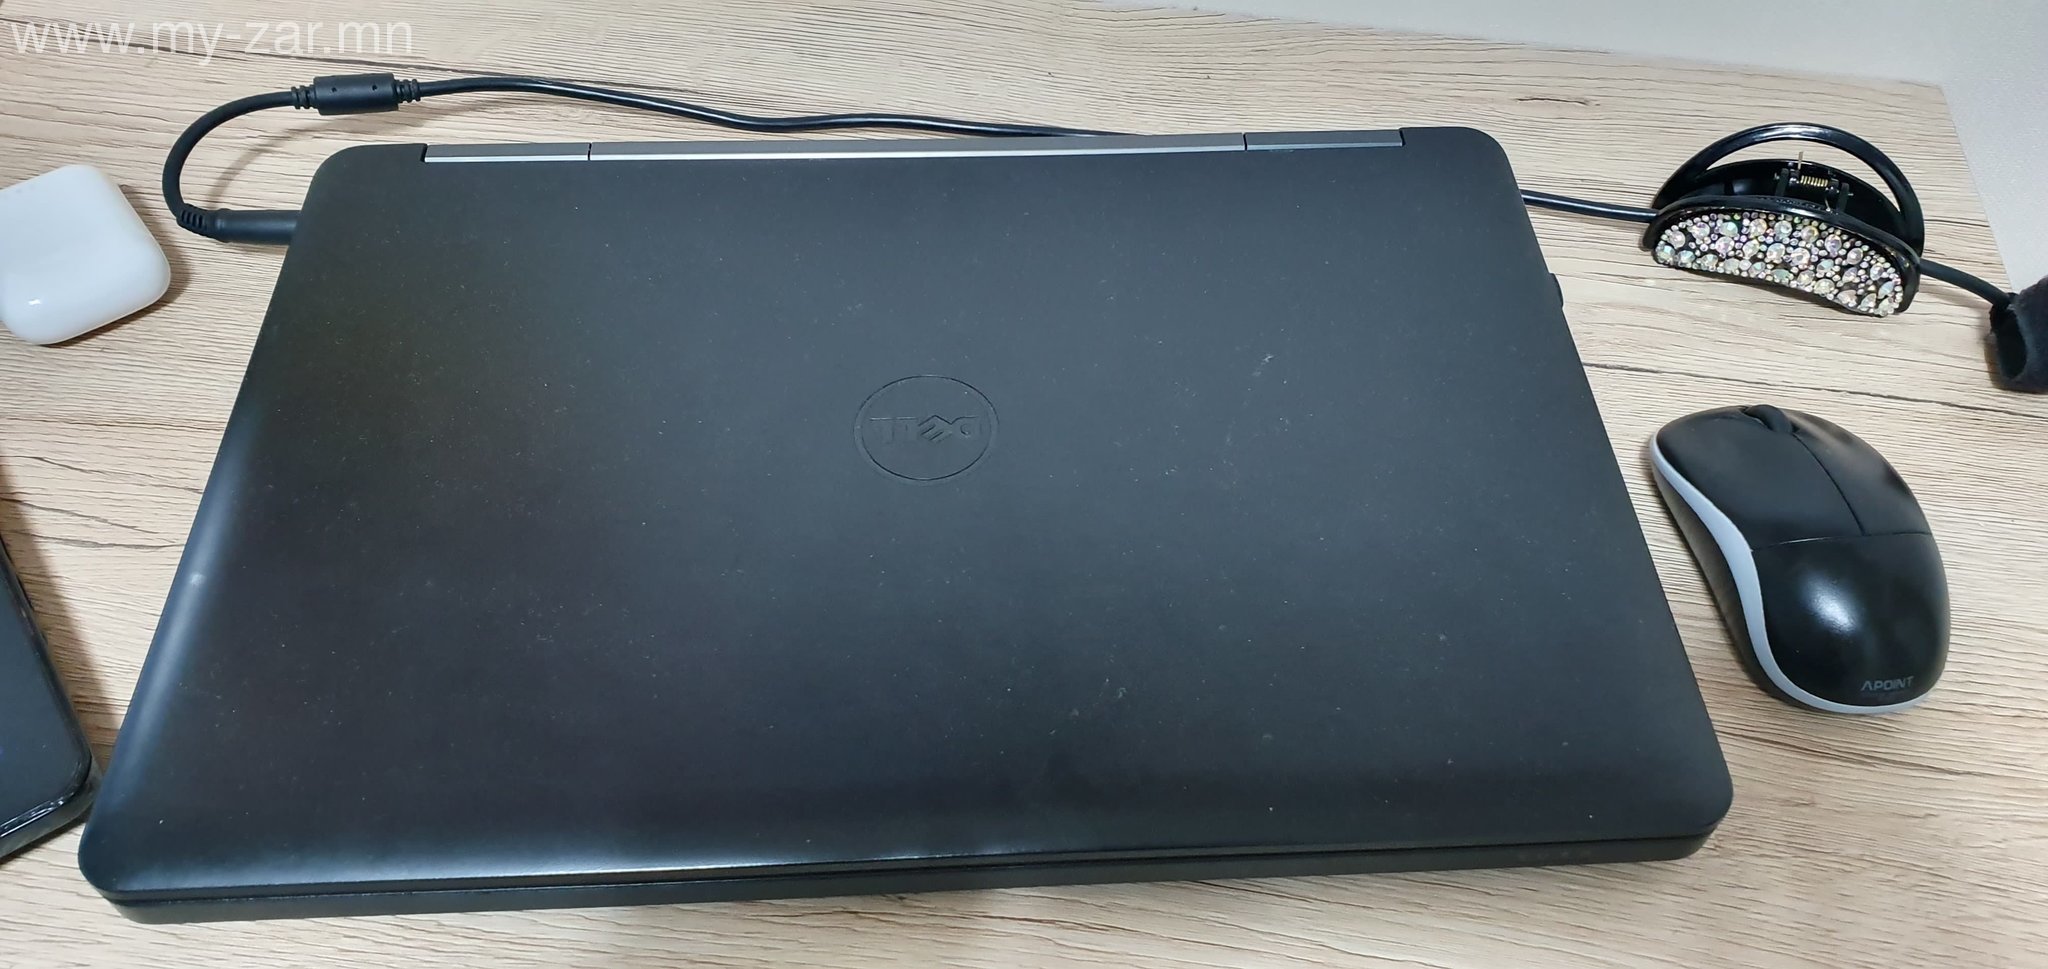 Маш цэвэрхэн хэрэглэсэн Dell - I5-4th gen numpad-тай зөөврийн компьютерийг 